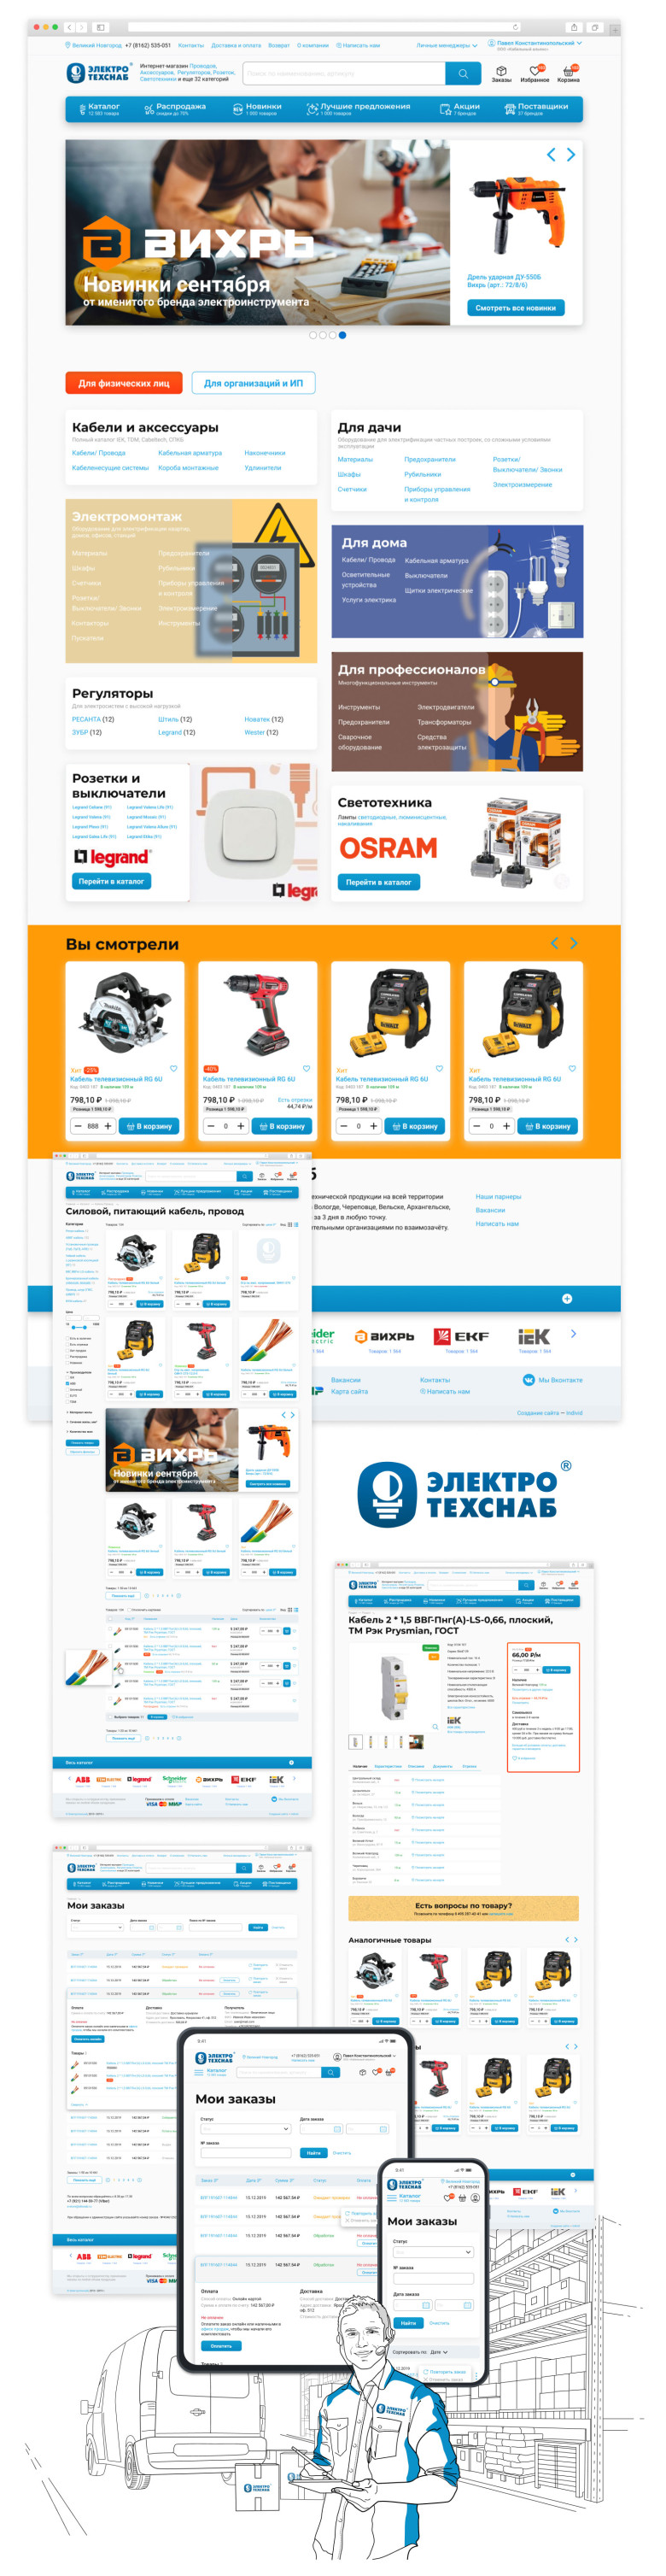 Интернет-магазин дистрибьютора электротехнической продукции компании "Электротехснаб"